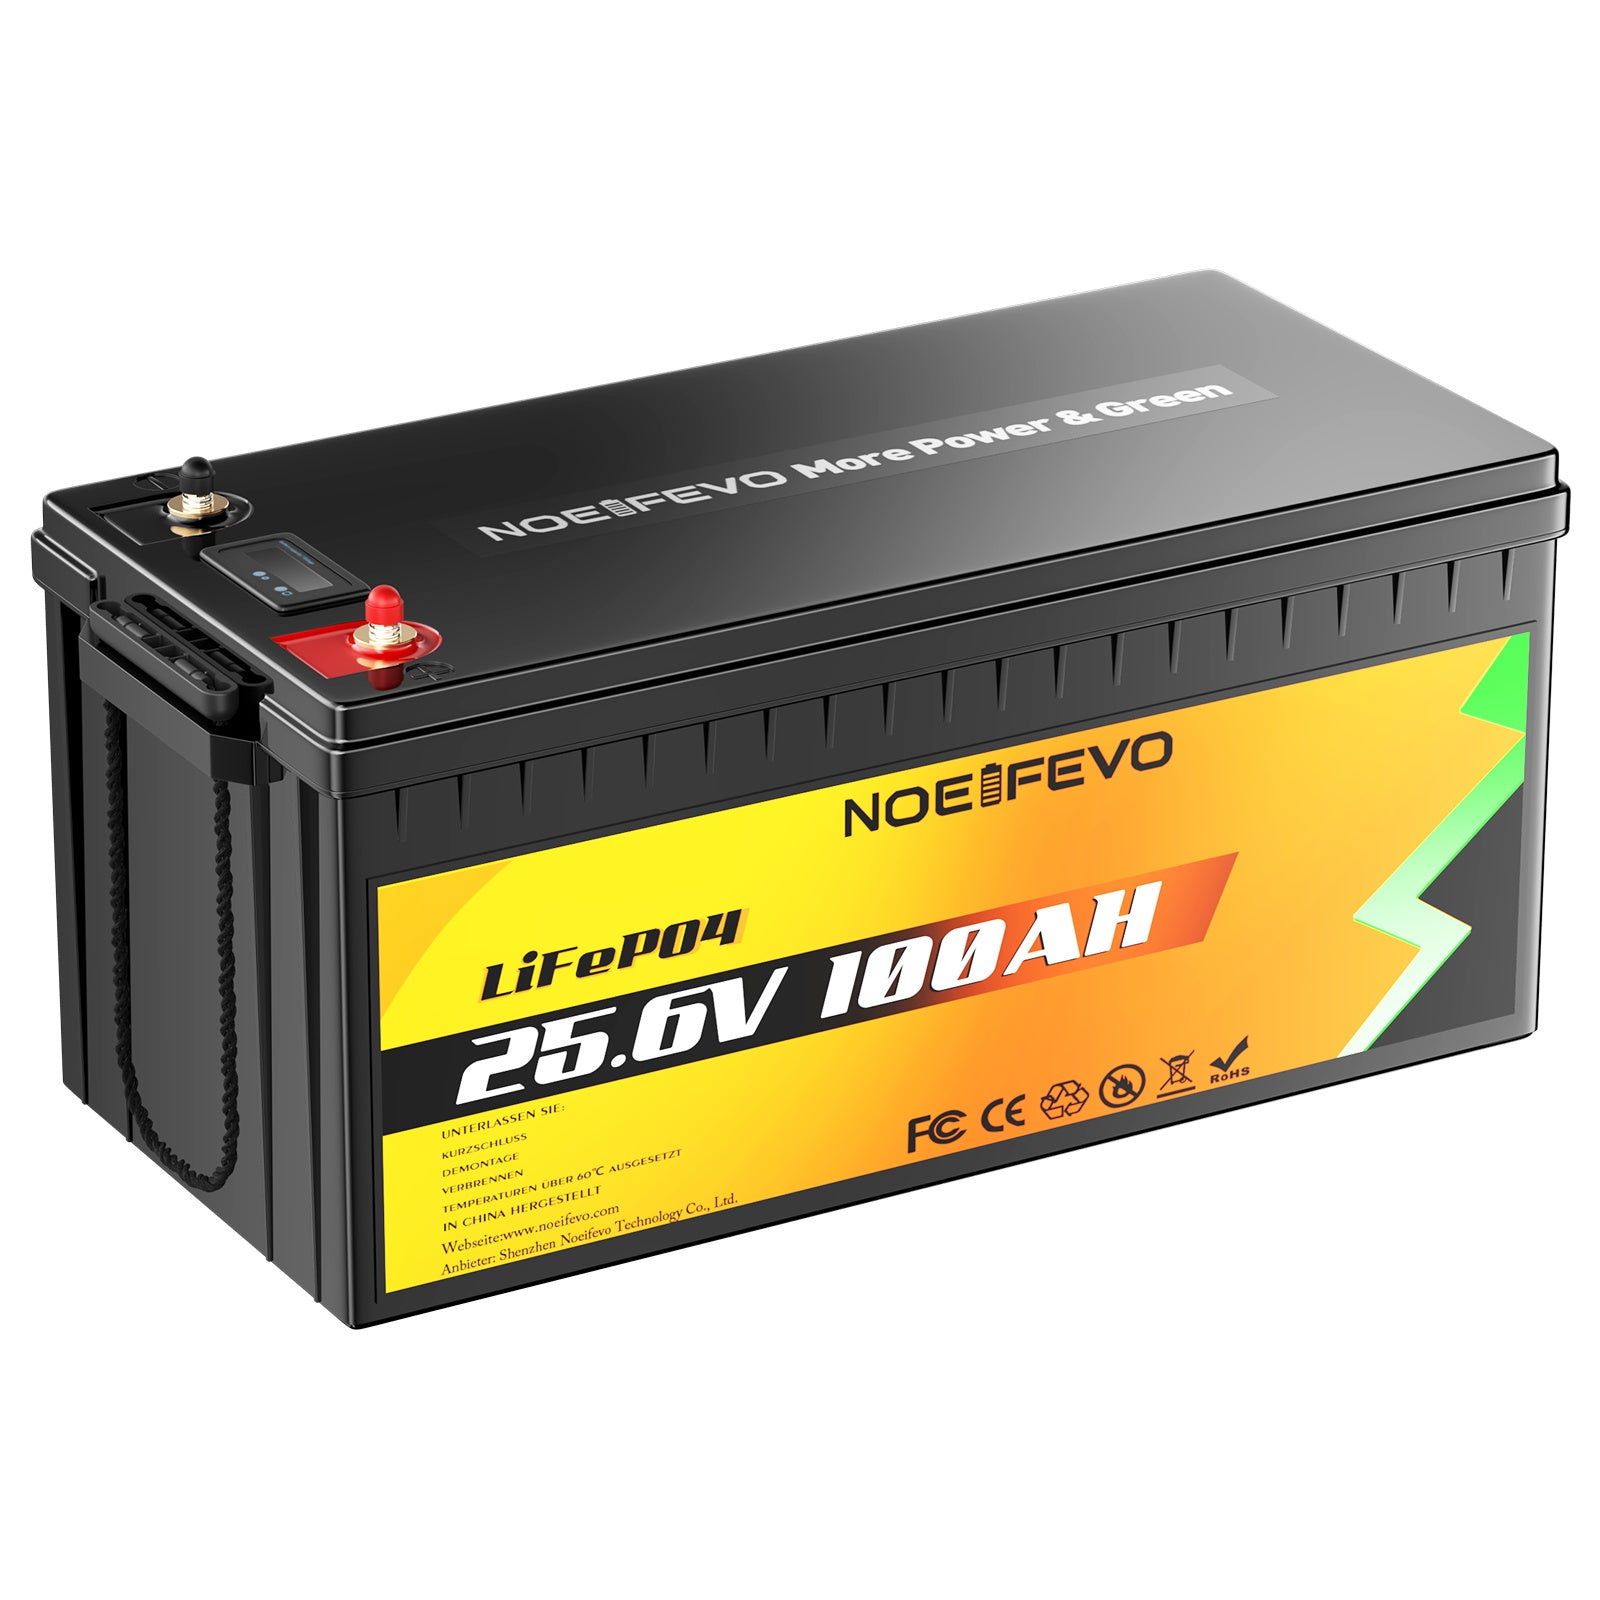 NOEIFEVO F2410 25.6V 100AH lithium ijzer fosfaat batterij LiFePO4 met 100A BMS